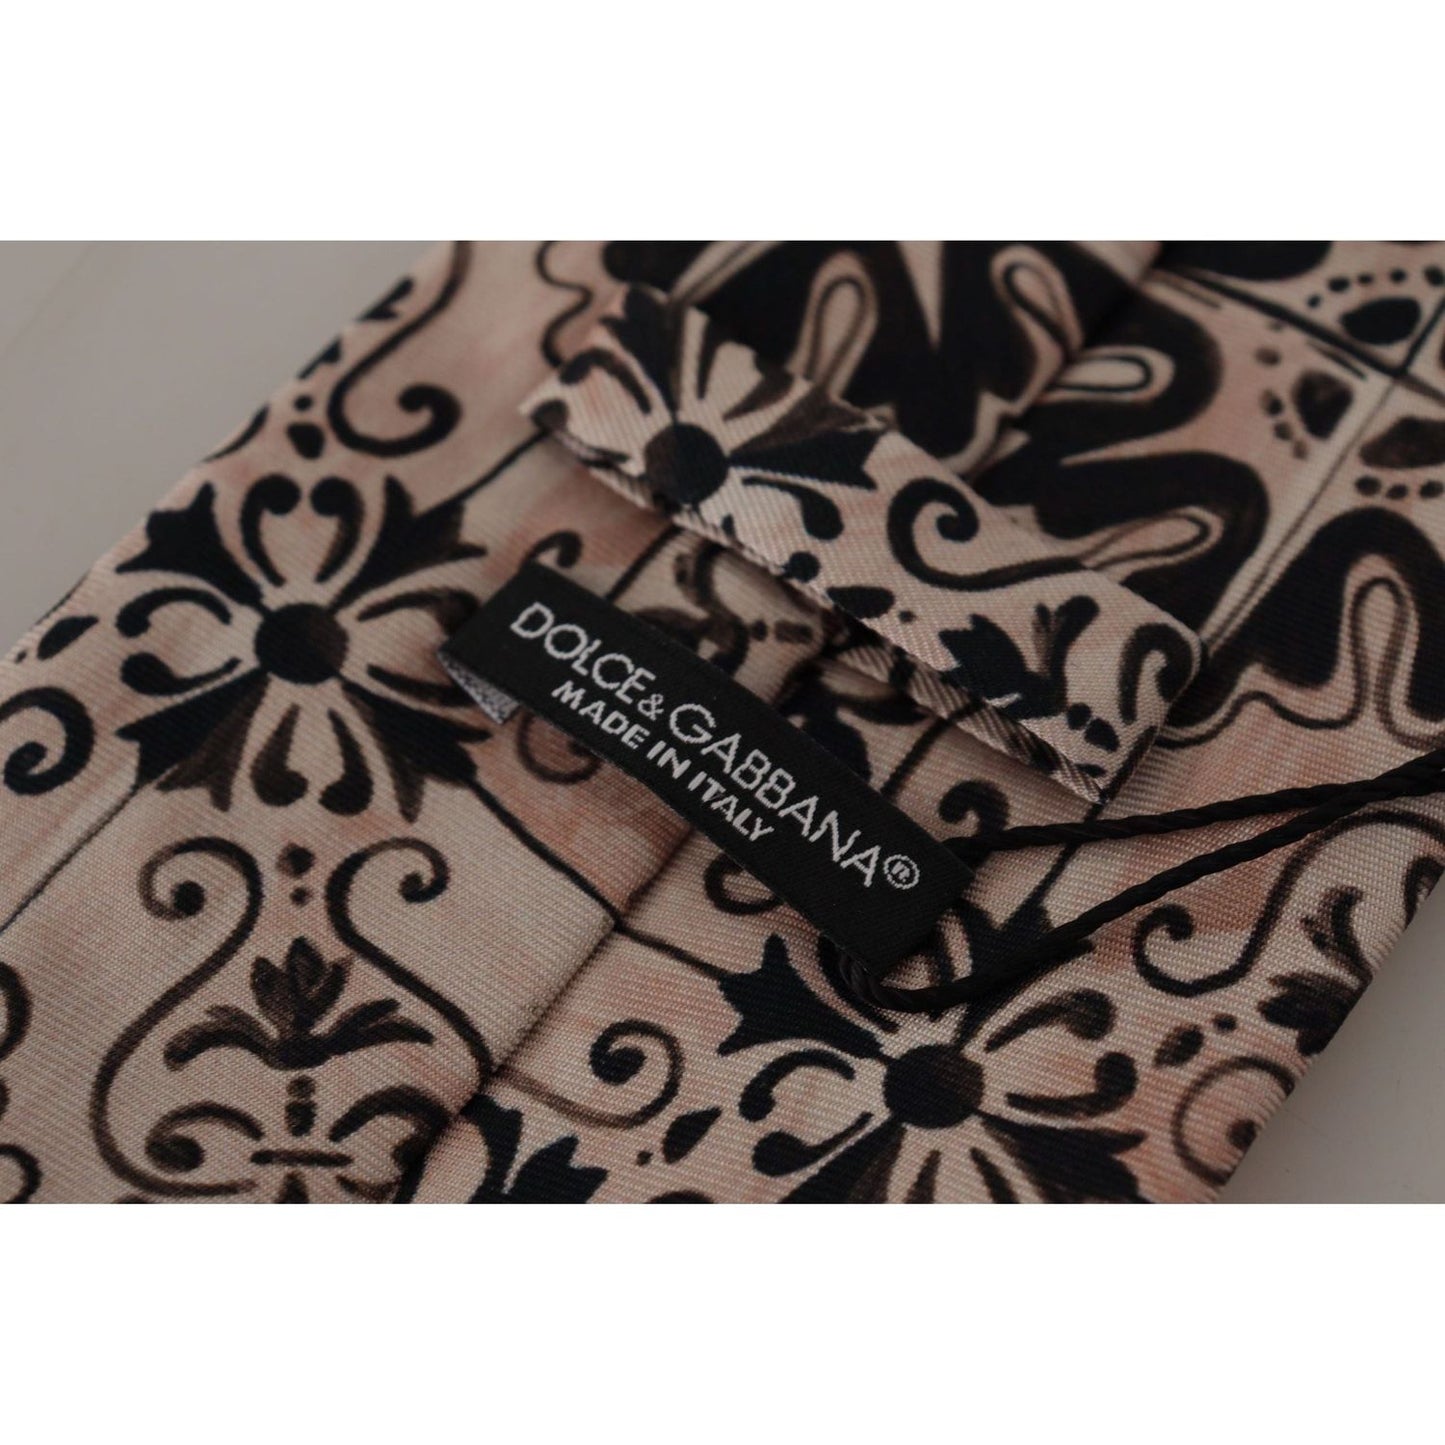 Dolce & Gabbana Stunning Silk Gentleman's Tie in Rich Brown beige-fantasy-pattern-necktie-accessory-black